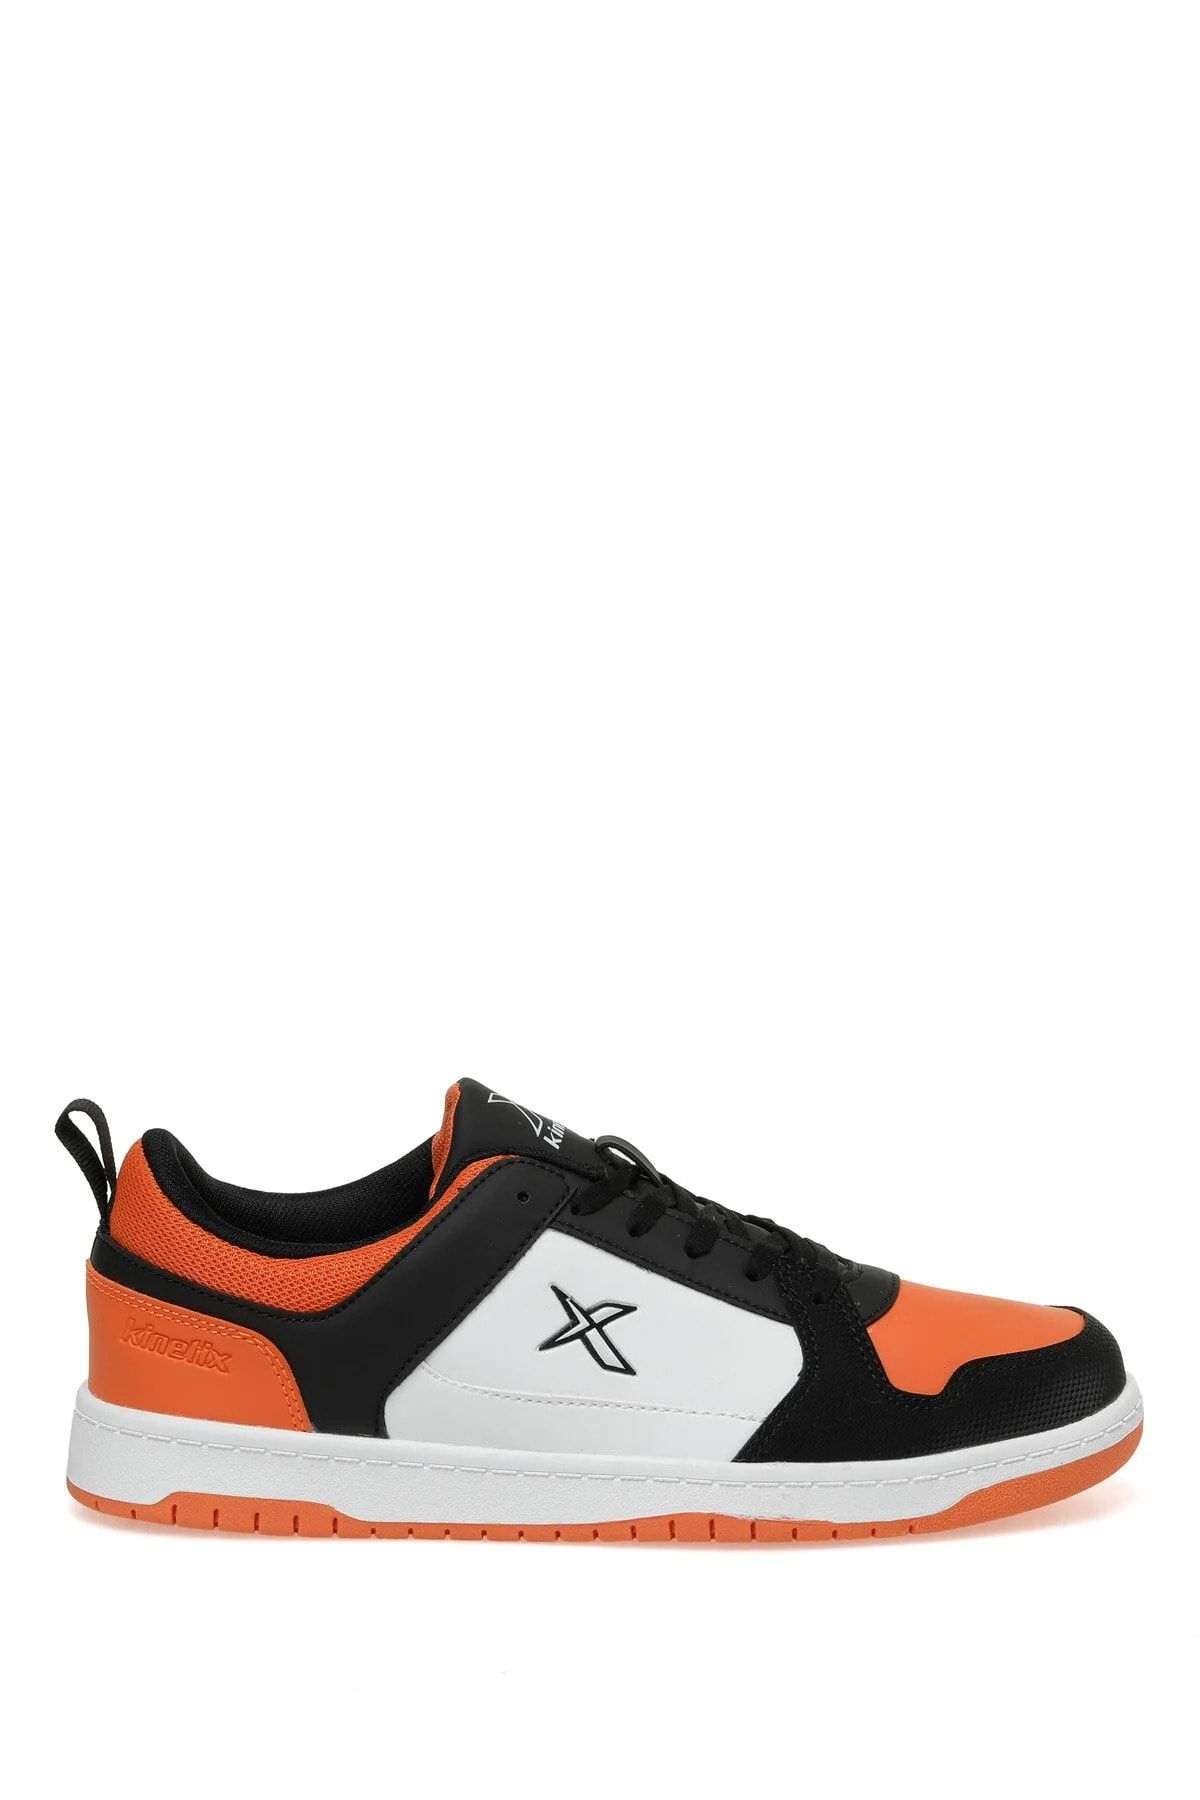 Kinetix Turuncu-siyah-beyaz Erkek Sneakers 2sjones3fx